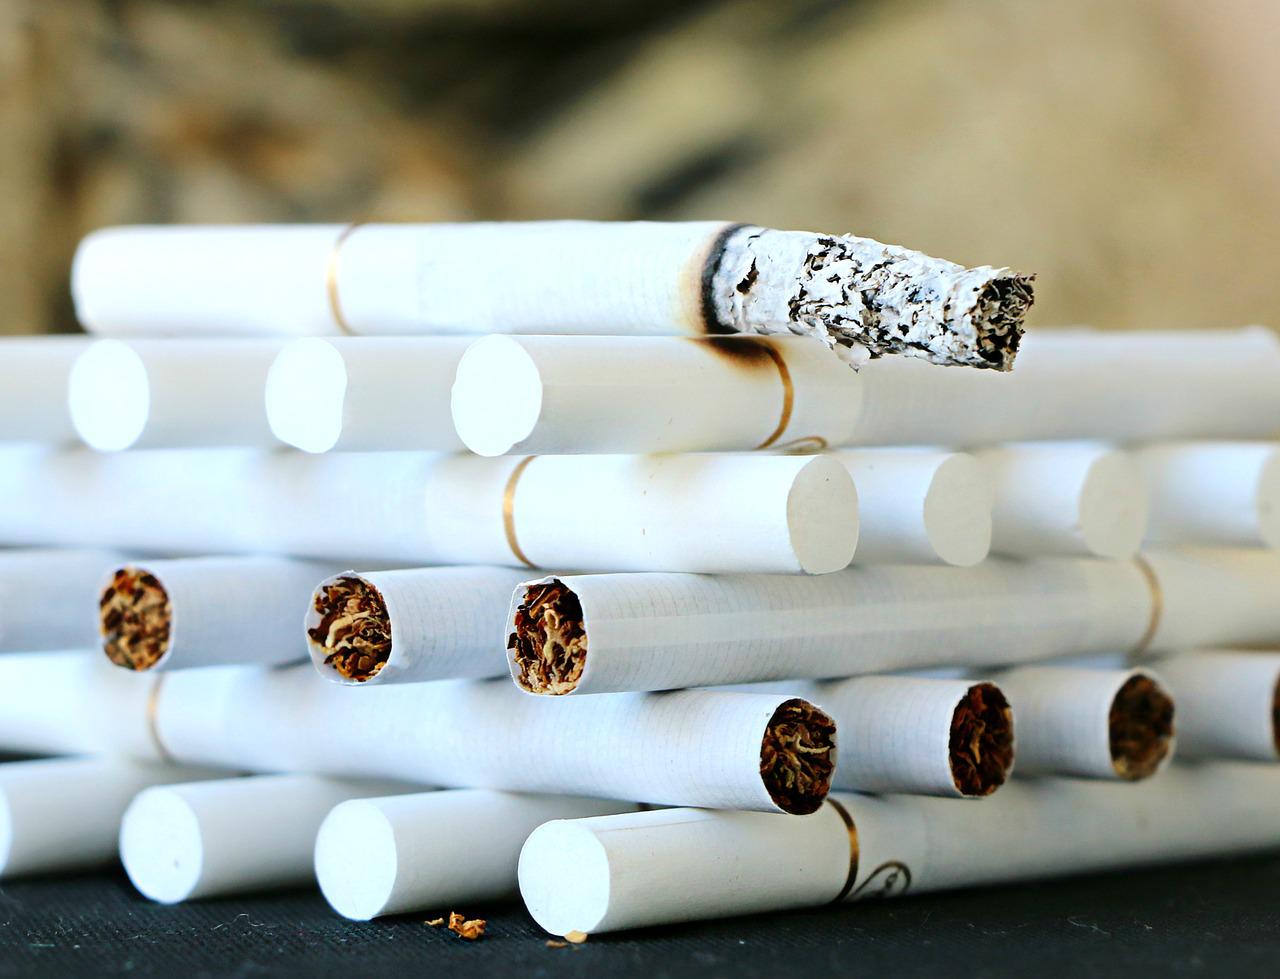 Le filtre des cigarettes est-il efficace ? - L'univers de Vanessa D